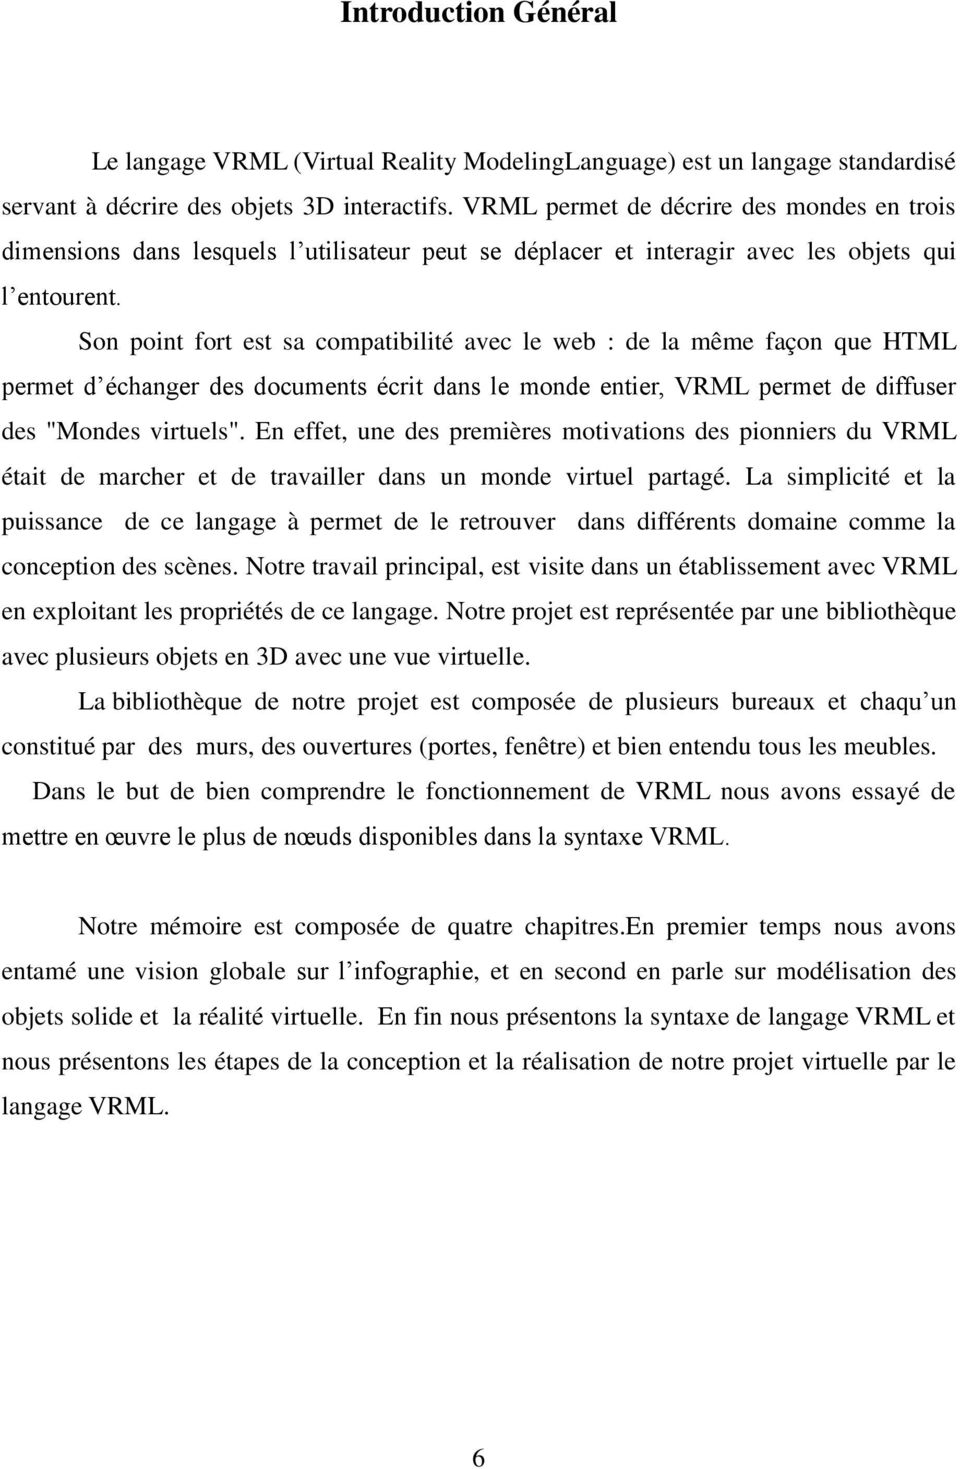 Son point fort est sa compatibilité avec le web : de la même façon que HTML permet d échanger des documents écrit dans le monde entier, VRML permet de diffuser des "Mondes virtuels".